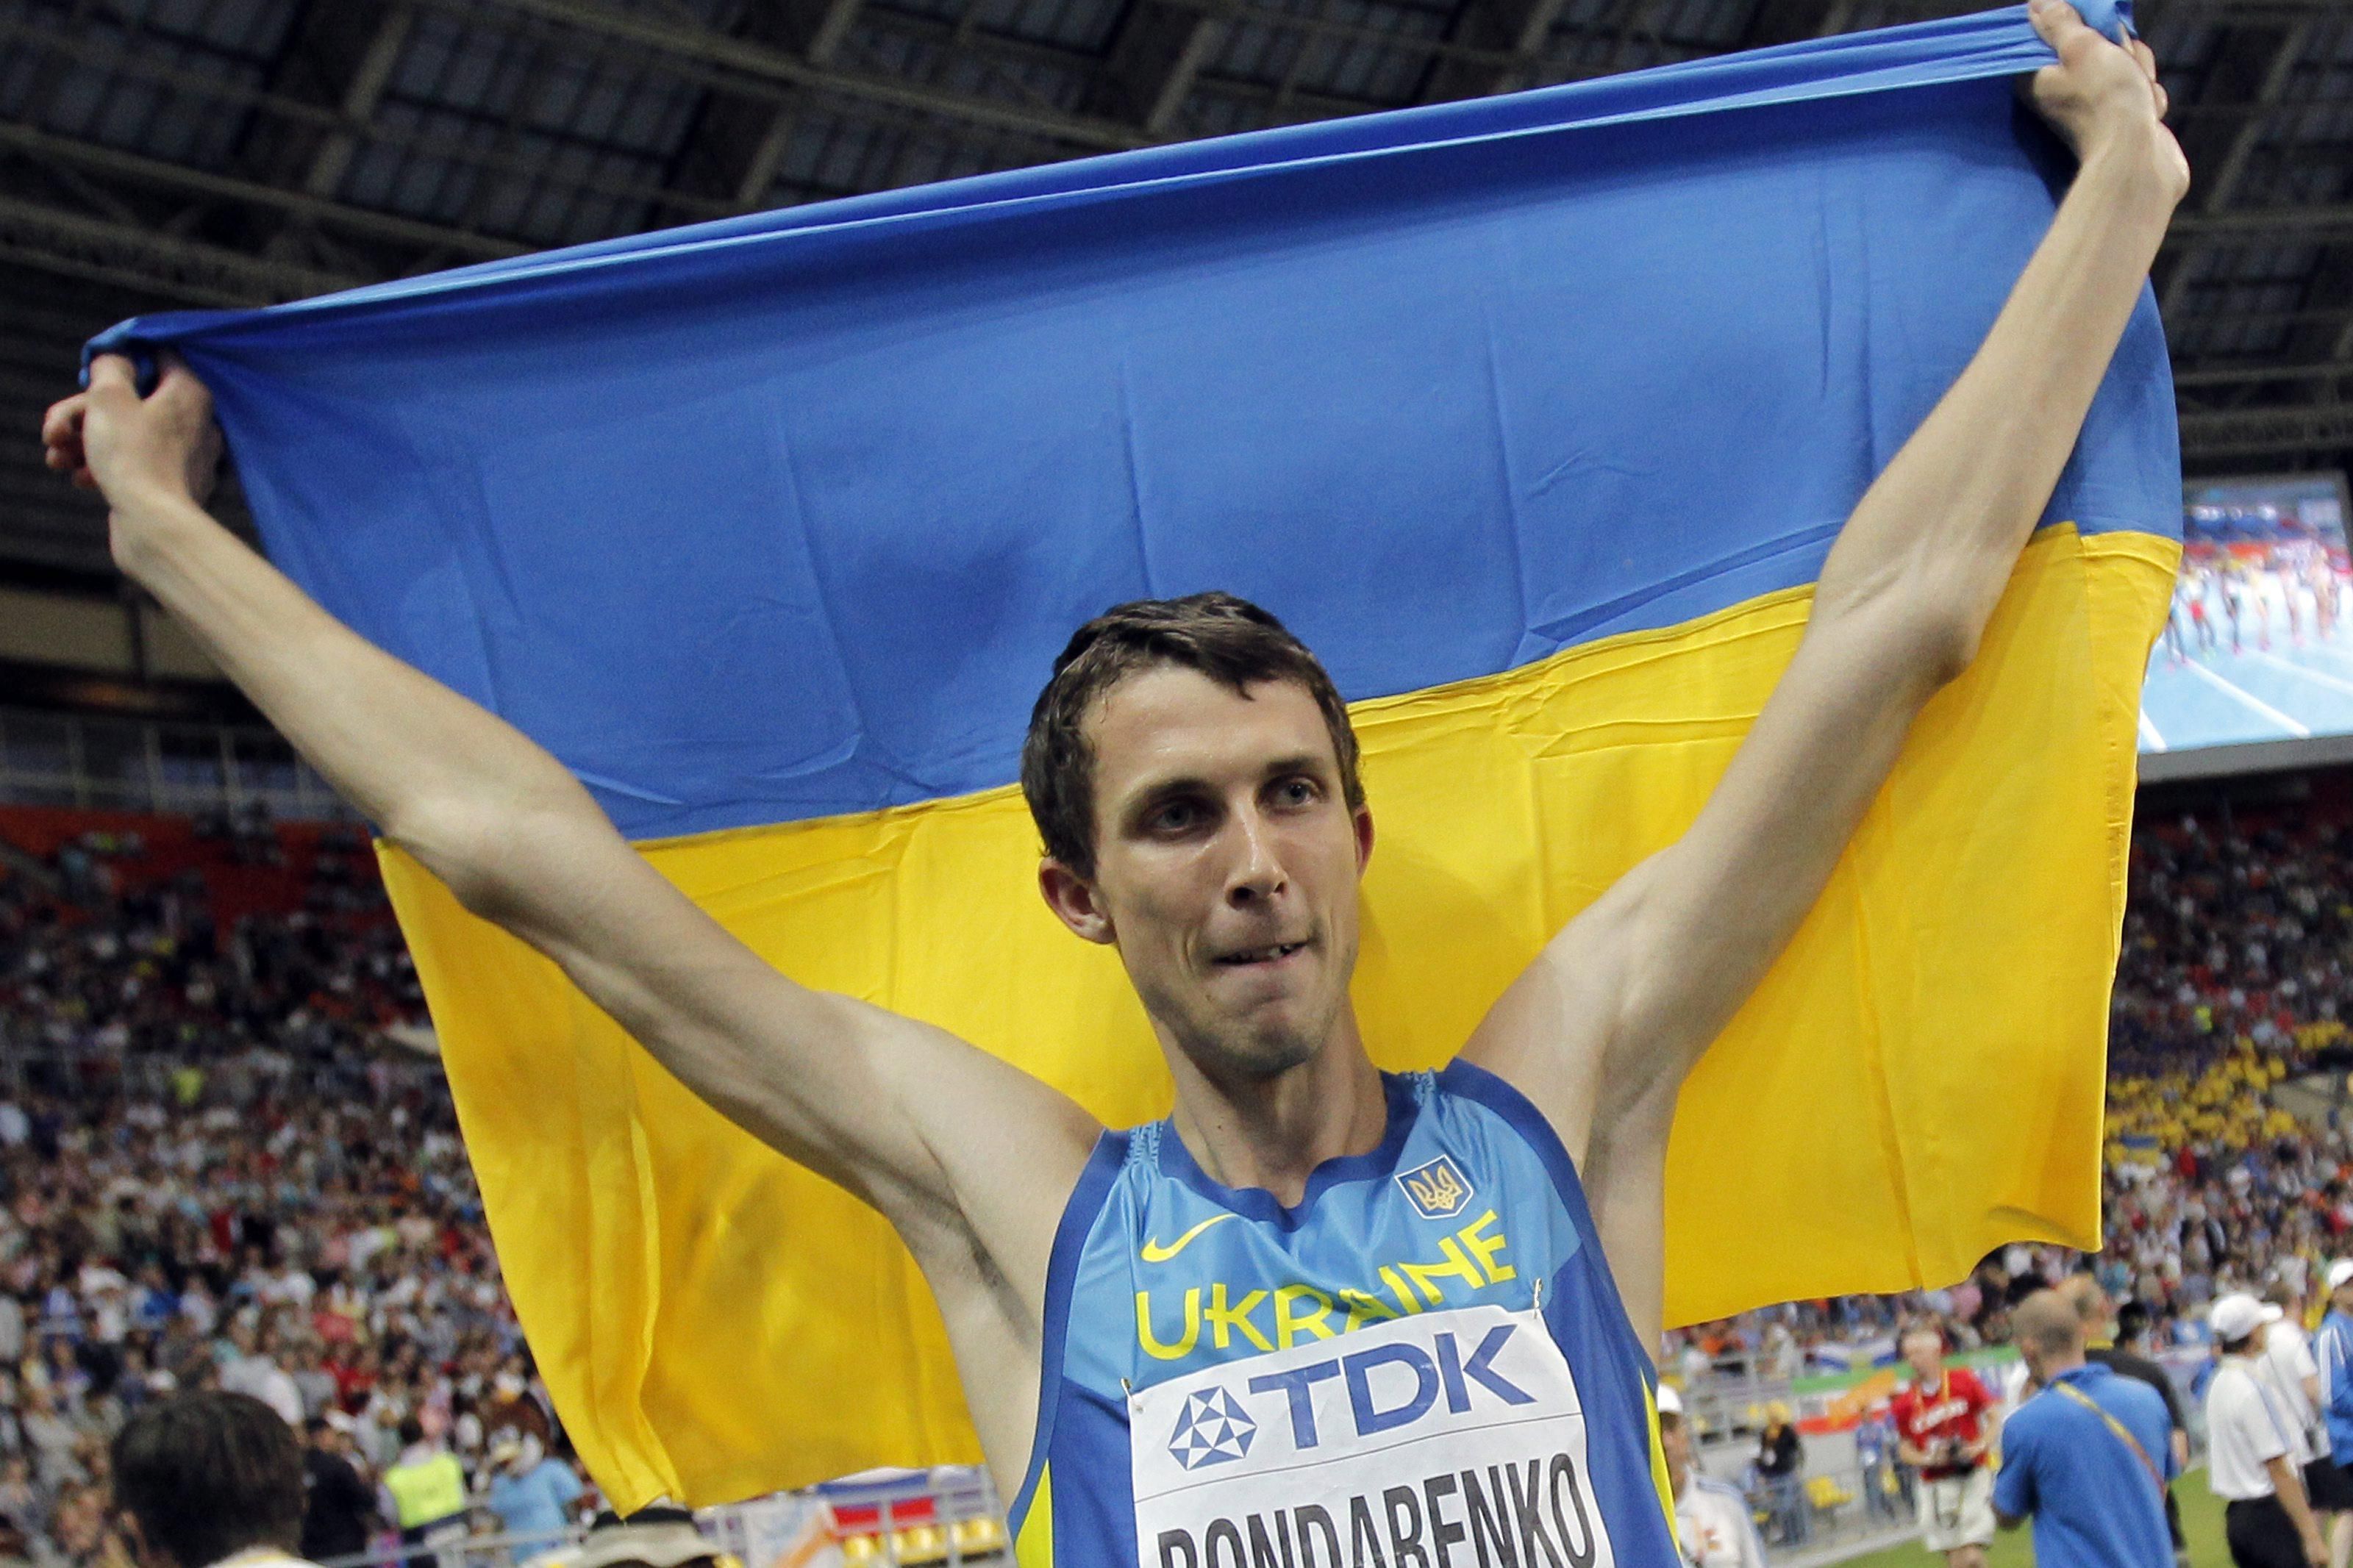 Украинский прыгун возглавил общий зачет престижных соревнований